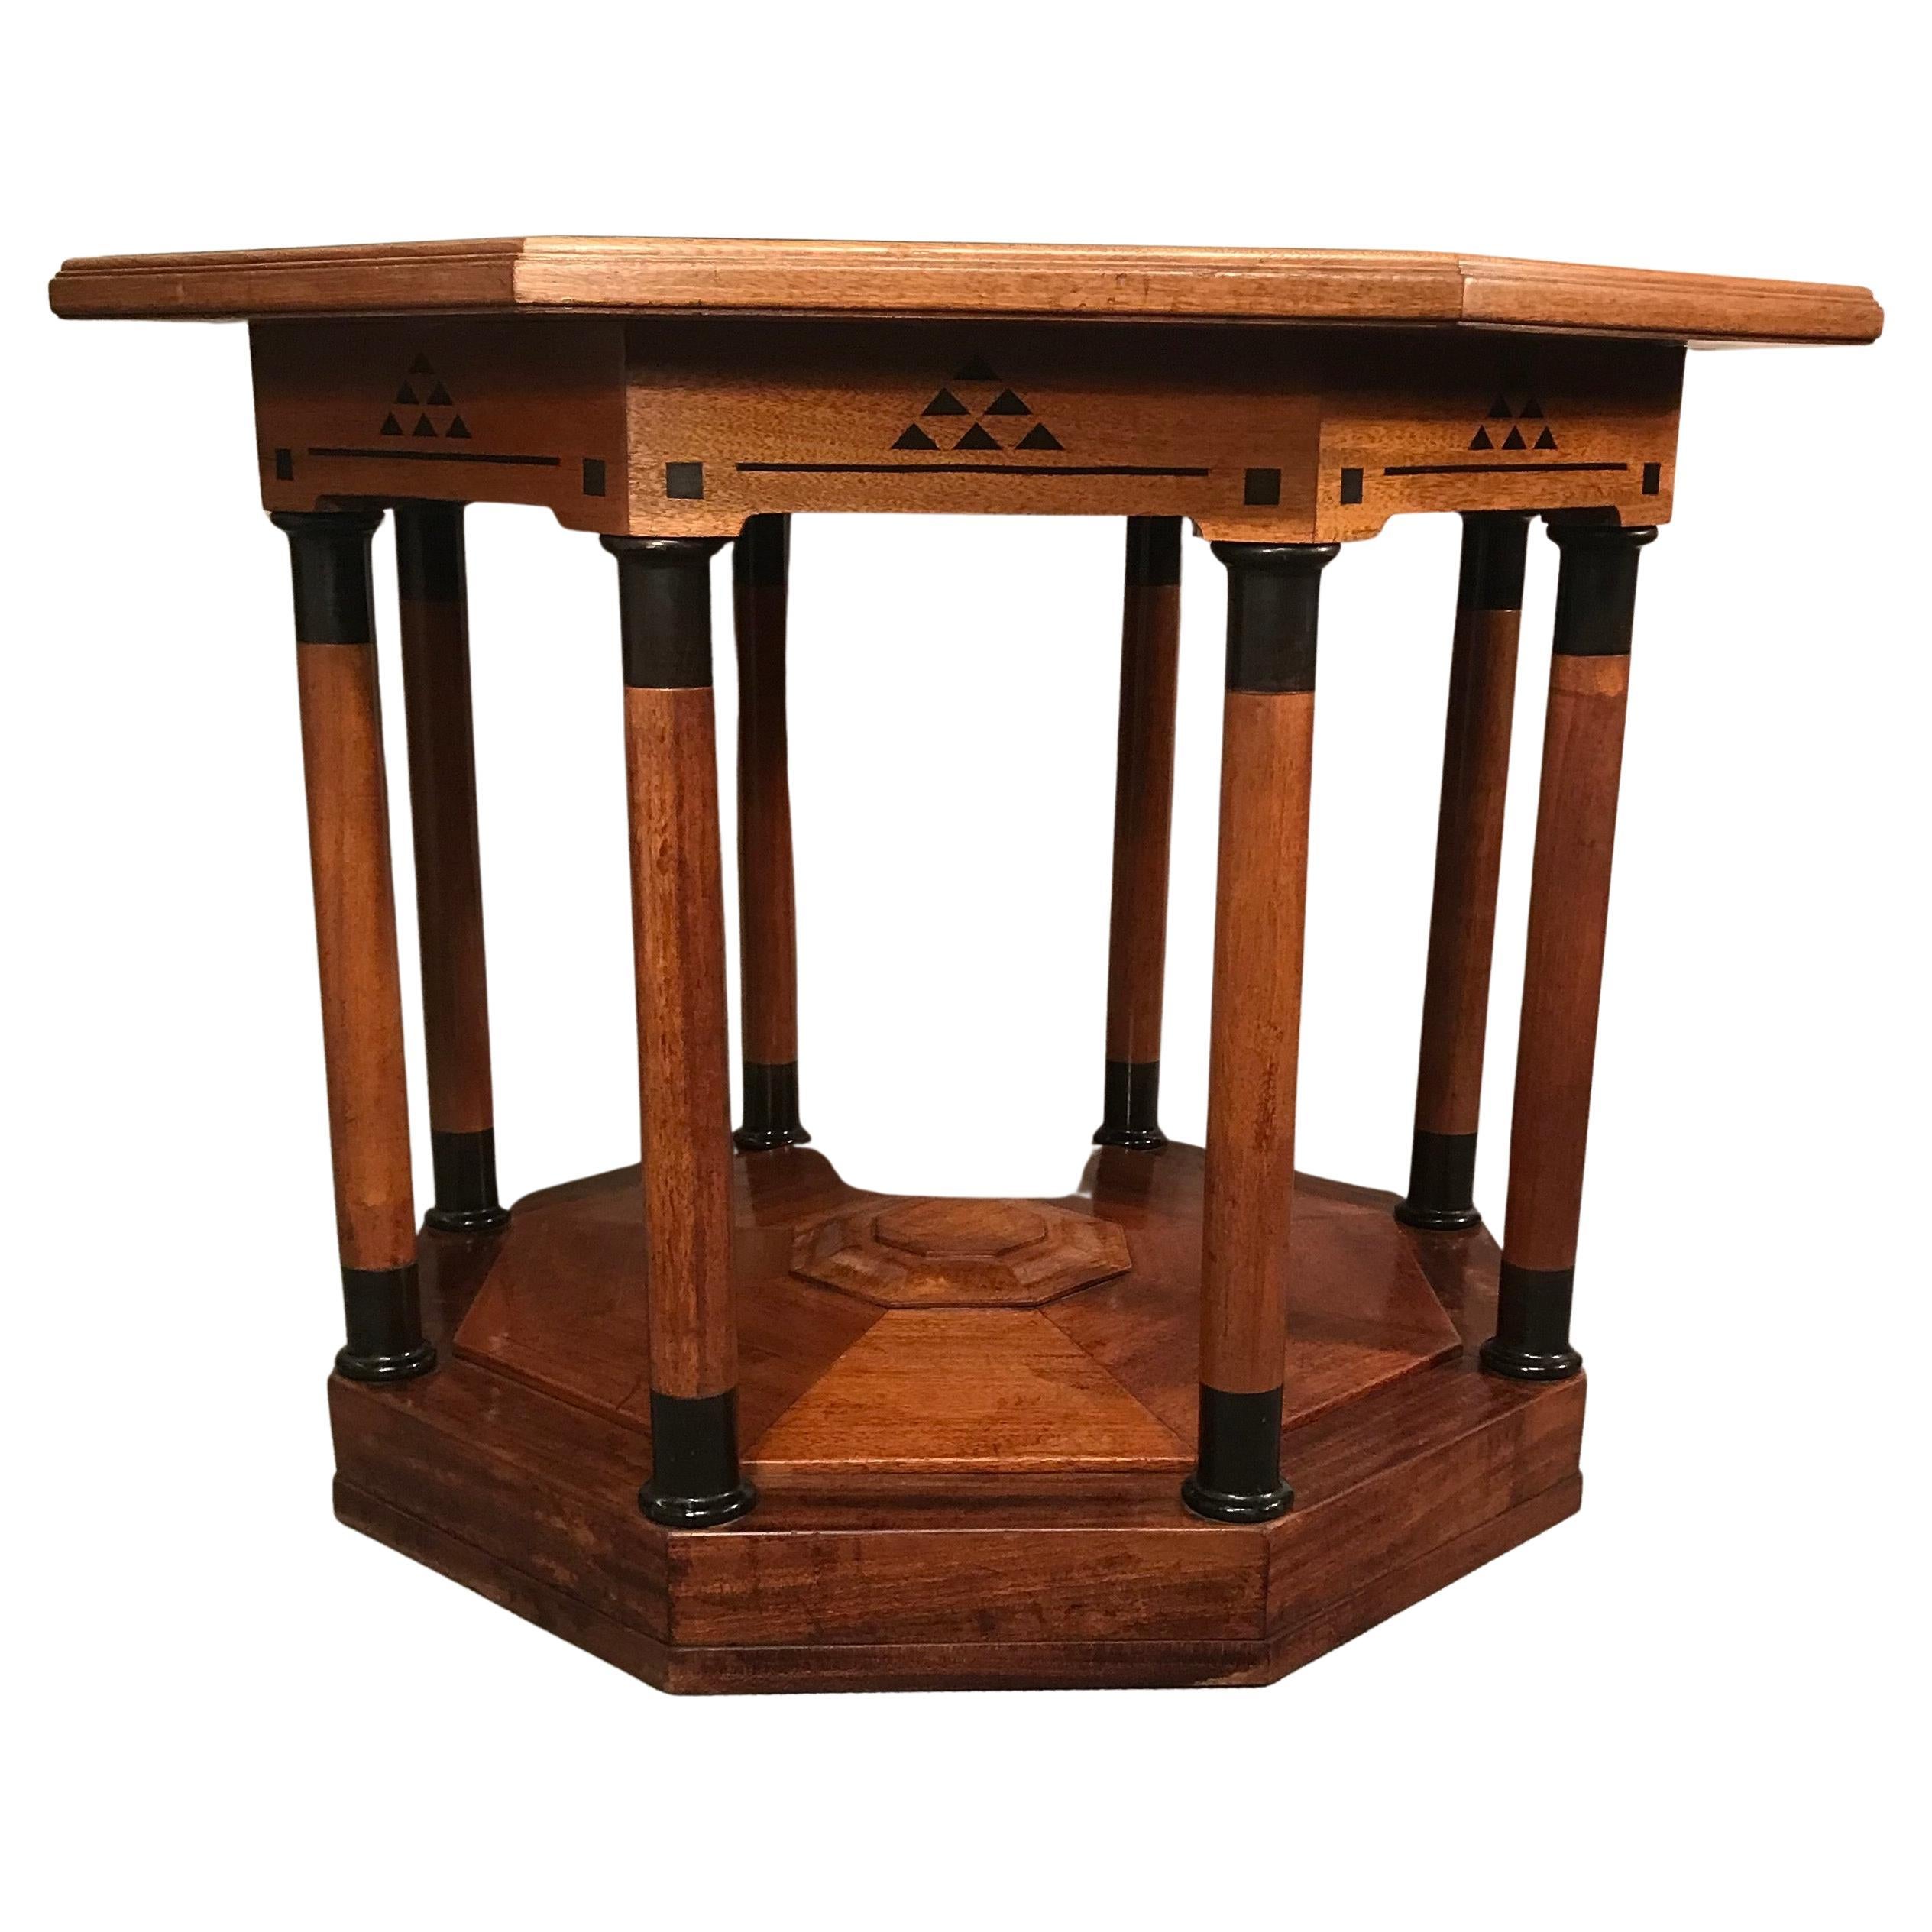 Dieser einzigartige Art-Déco-Tisch stammt aus der Zeit um 1910-20. Es kommt aus Deutschland. Der Tisch hat ein Nussbaumfurnier und ist mit geometrischen ebonisierten Intarsien aus verschiedenen Holzarten verziert. Er hat einen achteckigen Aufsatz